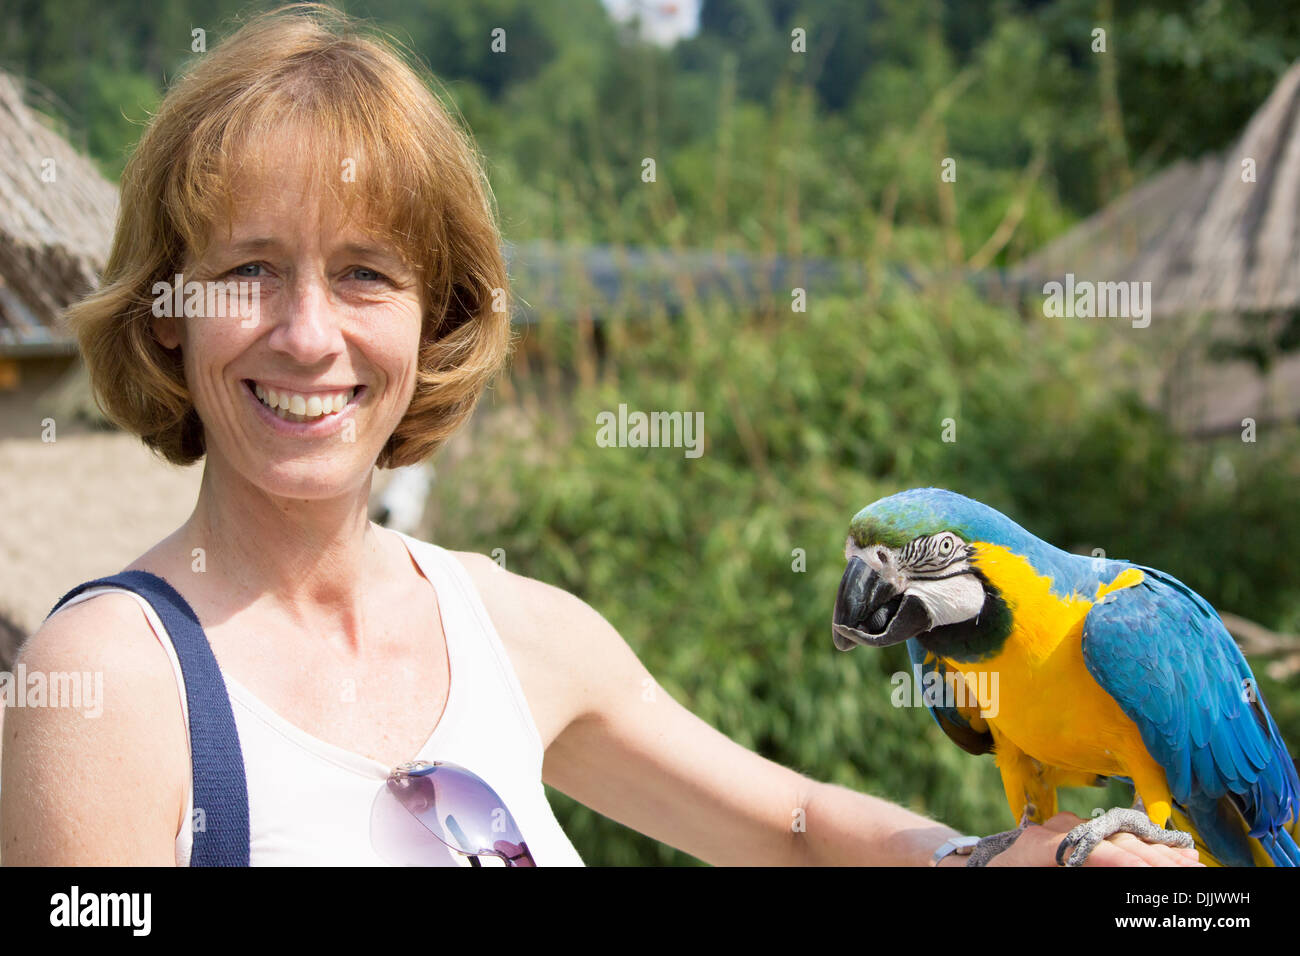 Mujer con azul y amarillo en su brazo guacamayo Foto de stock